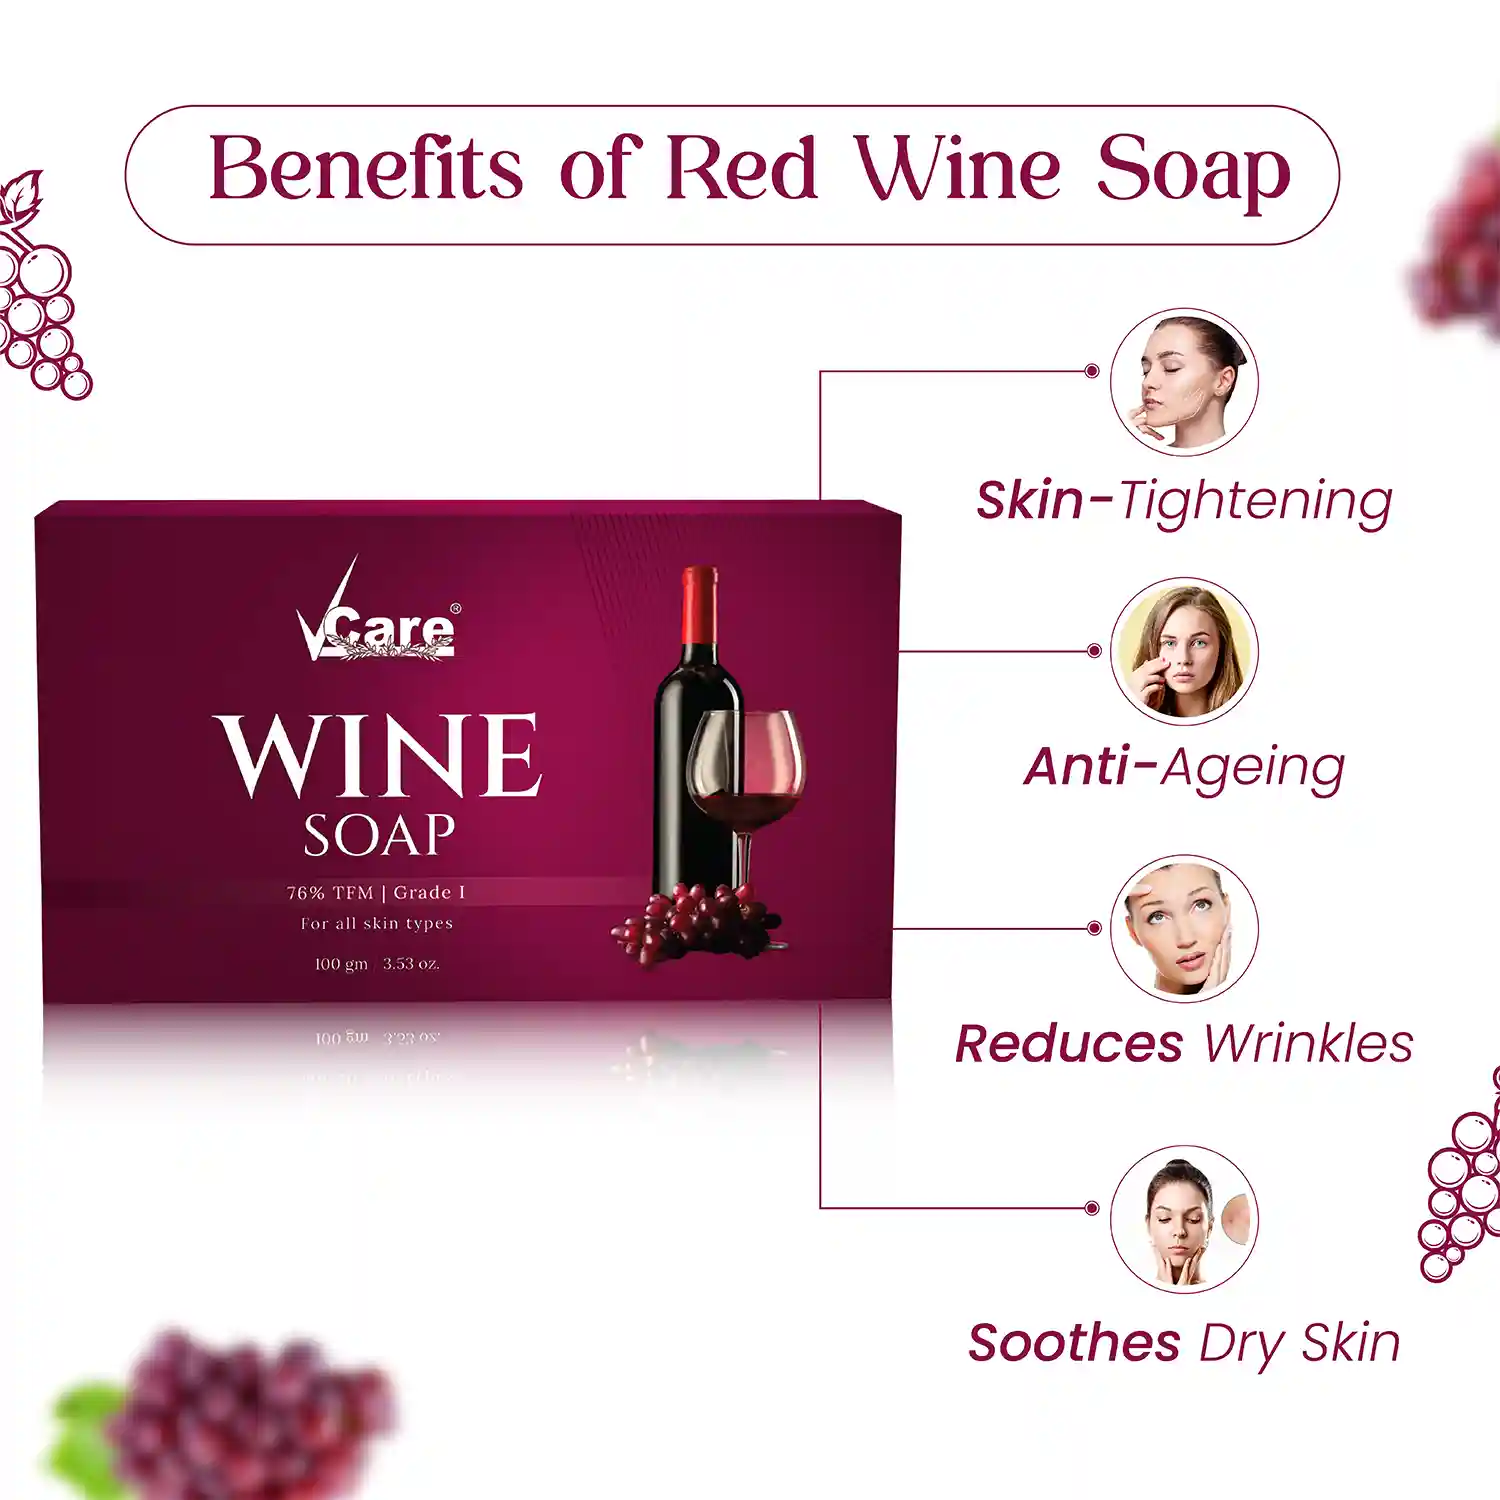 Red wine soap,wine soap,vcare red wine soap,bathing soap,wine soap v care